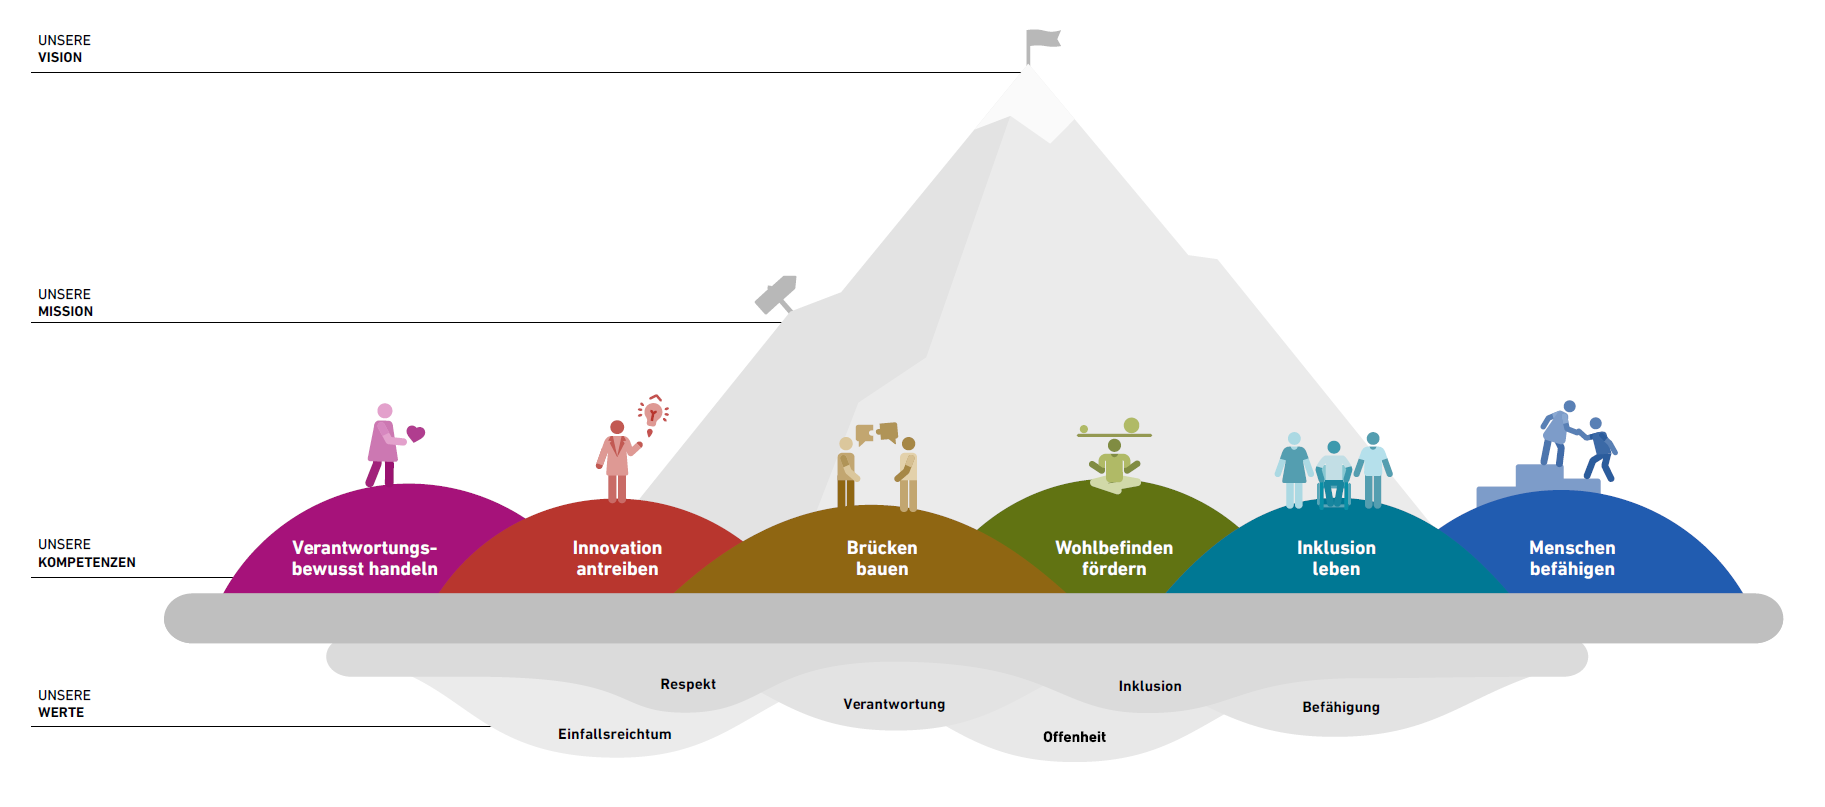 Vergr?sserte Ansicht: Infografik welche die sechs Werte zeigt: Einfallsreichtum, Respekt, Verantwortung, Offenheit, Einbeziehung, Befähigung